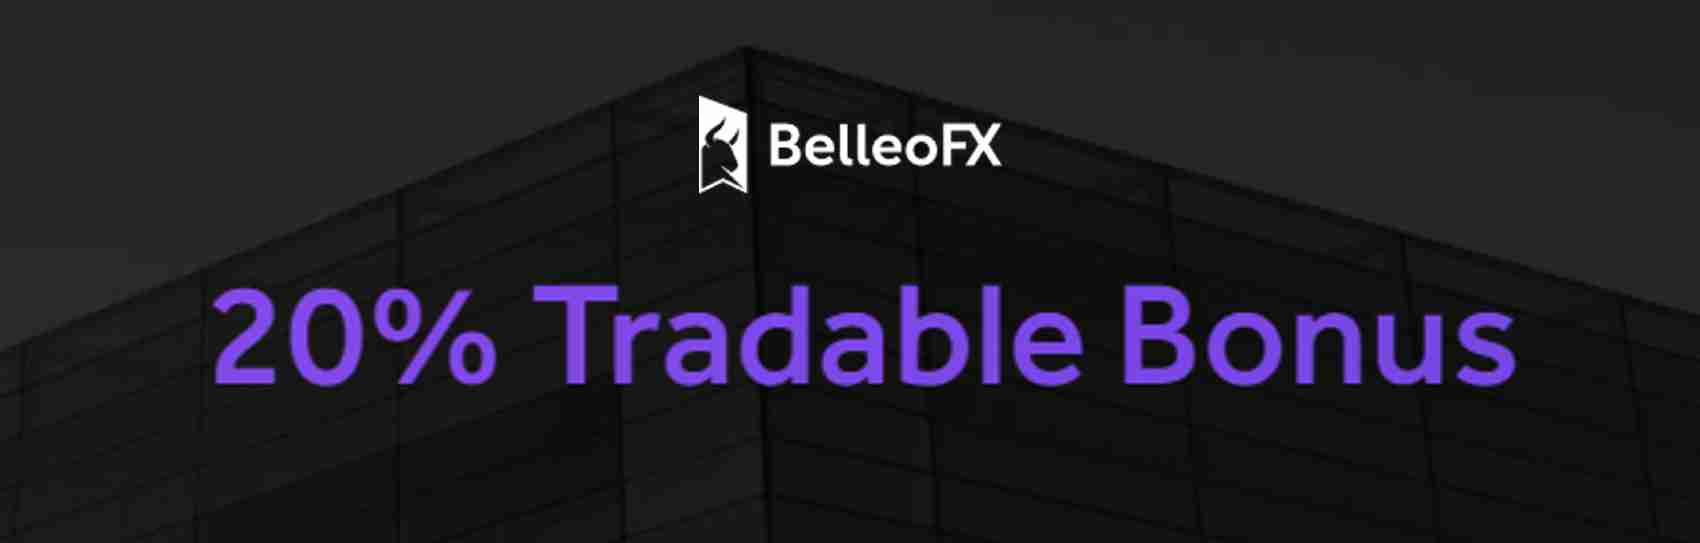 20% Tradable Bonus – BelleoFX